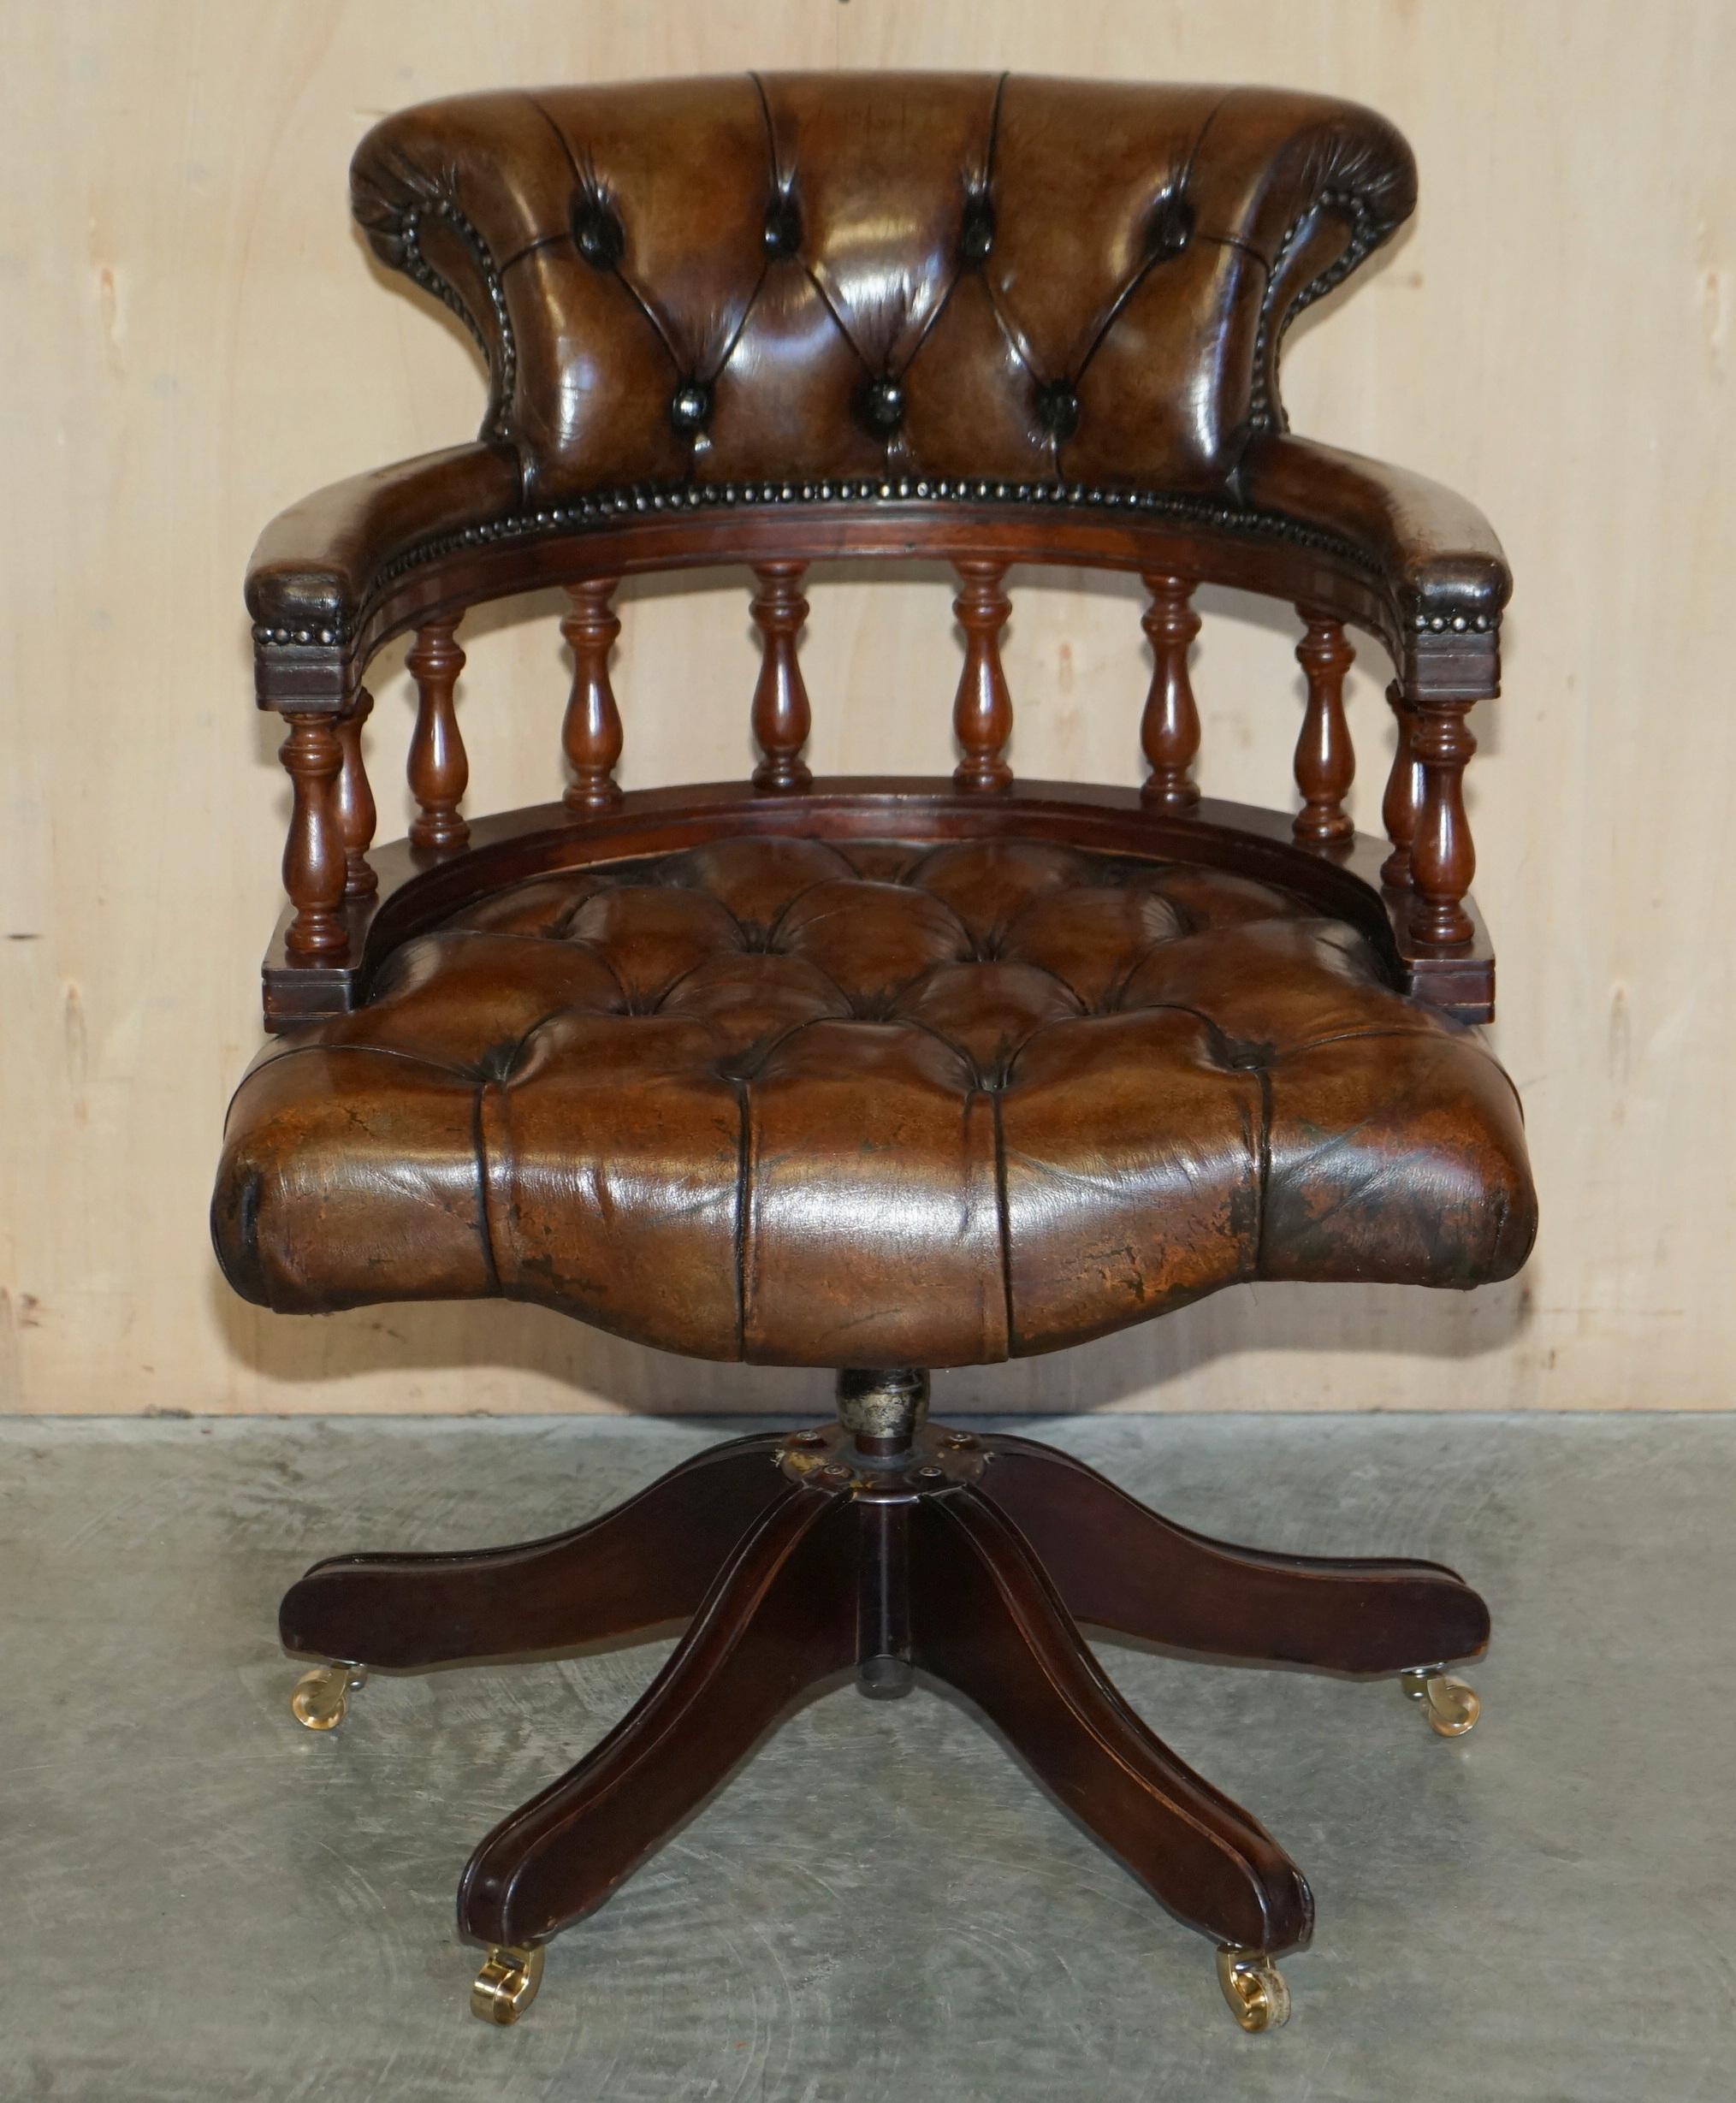 Nous sommes ravis d'offrir à la vente cette belle chaise de capitaine Chesterfield en cuir marron vieilli, entièrement boutonnée et restaurée. 

Cette pièce a été entièrement restaurée il y a environ un an, l'ancienne couleur a été enlevée et le